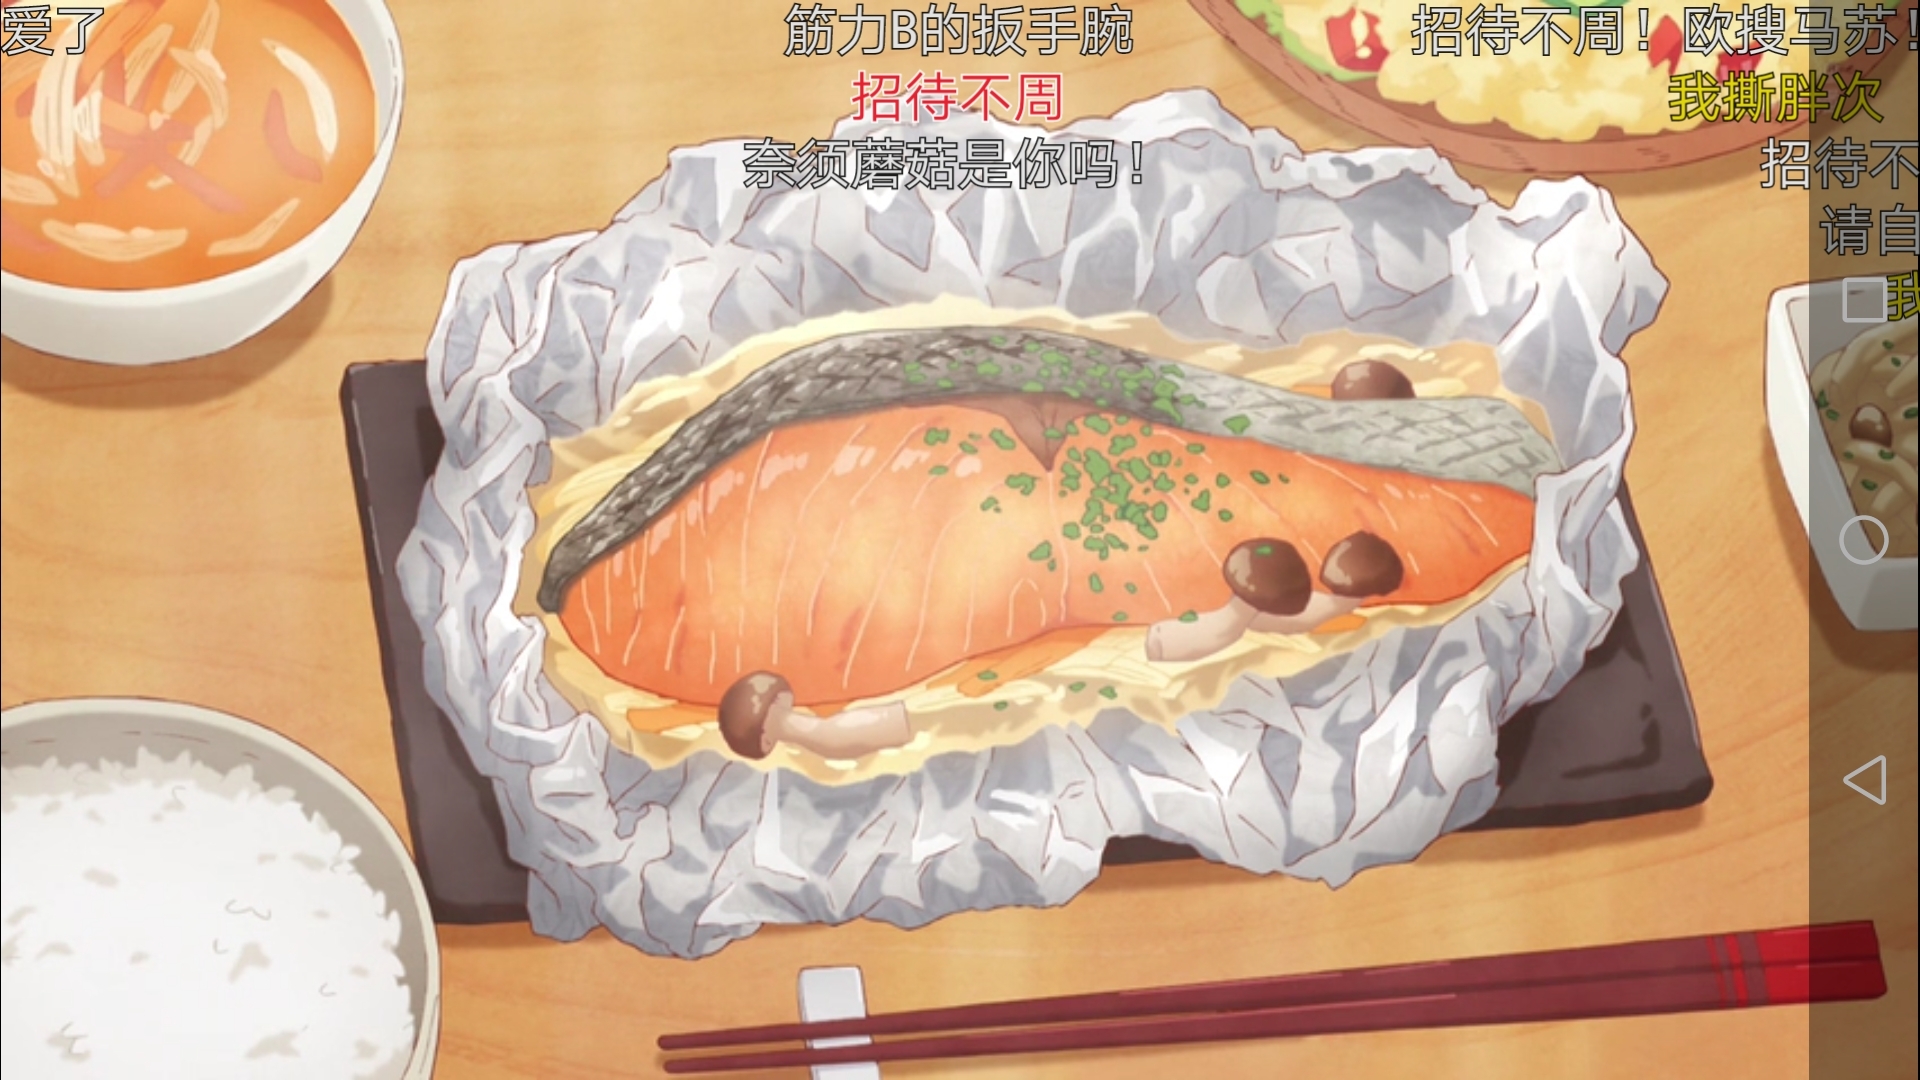 锡纸烤鲑鱼【卫宫家今天的饭】的做法